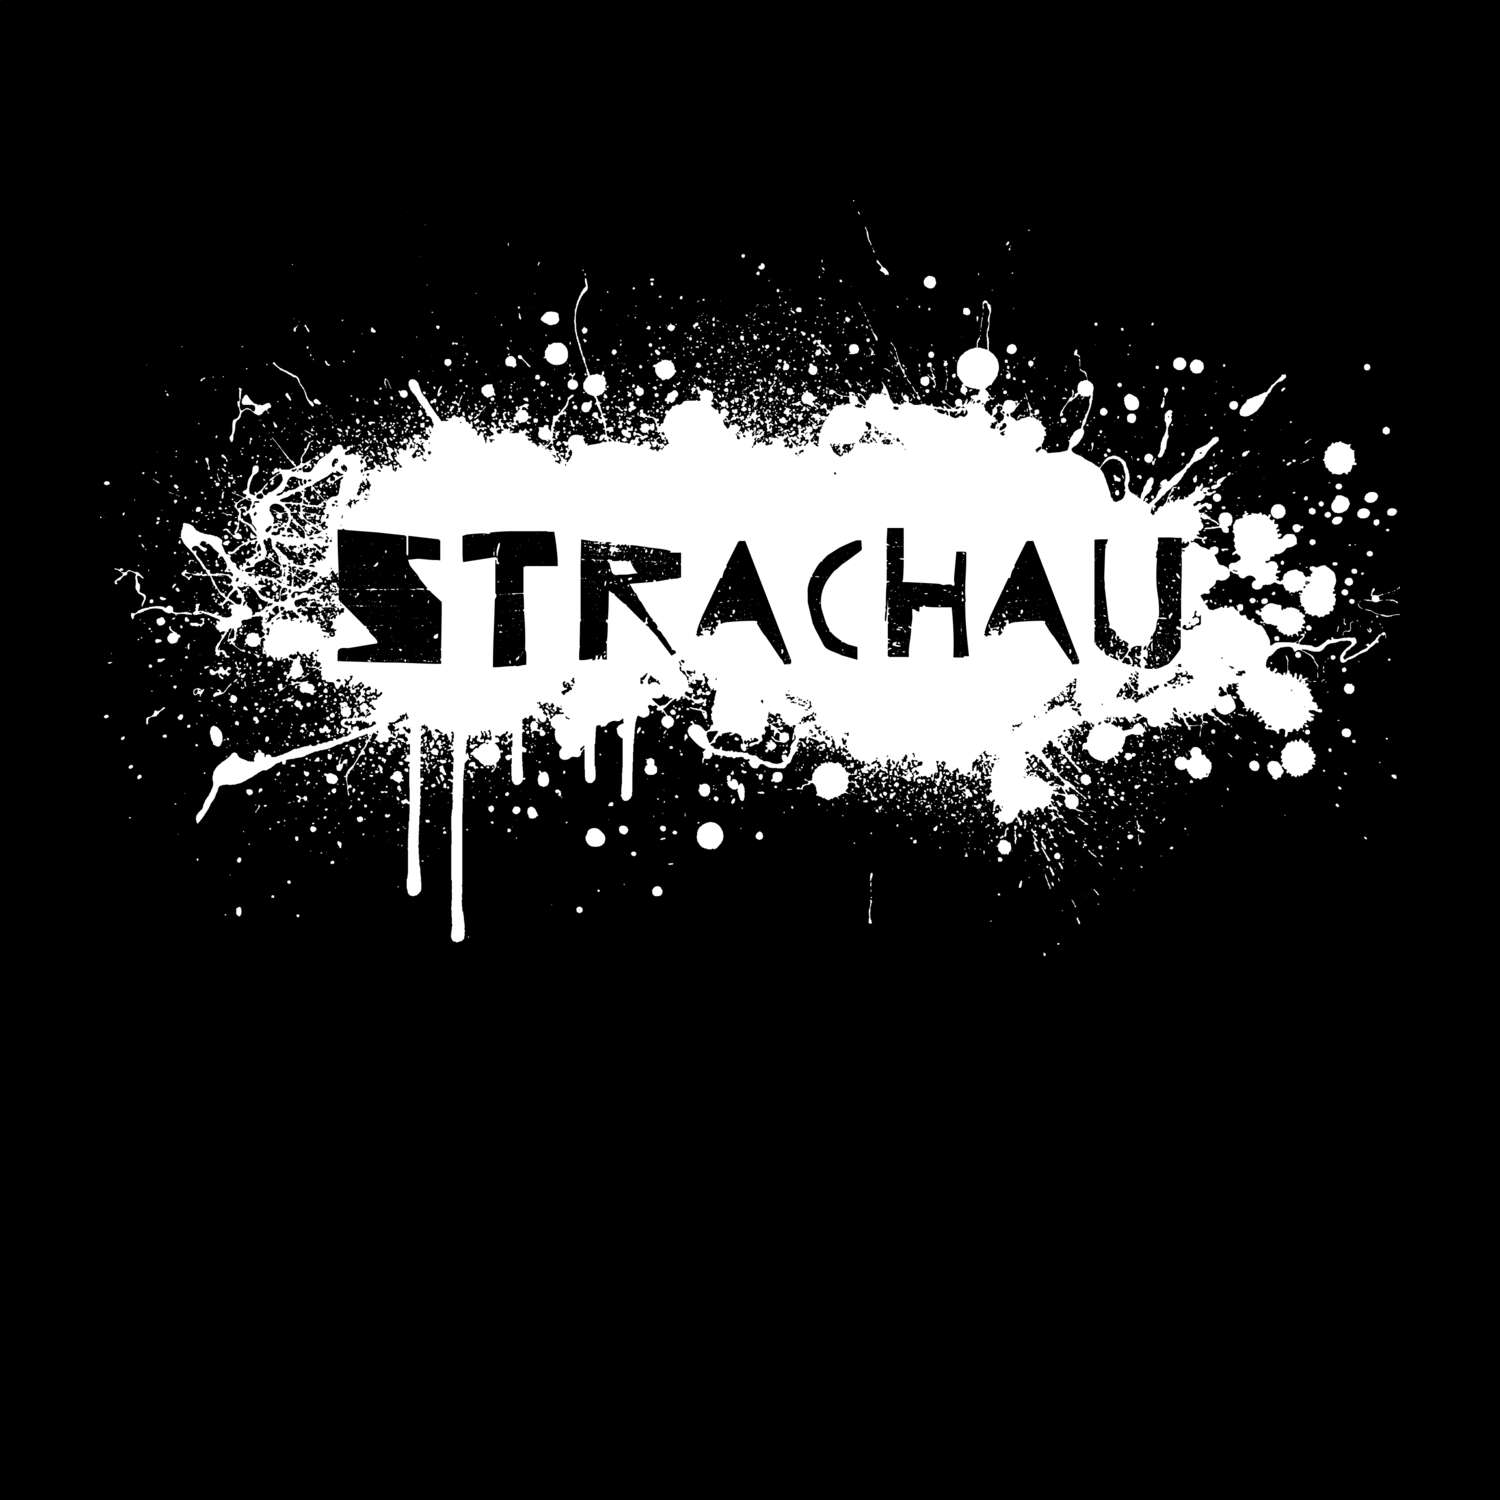 Strachau T-Shirt »Paint Splash Punk«